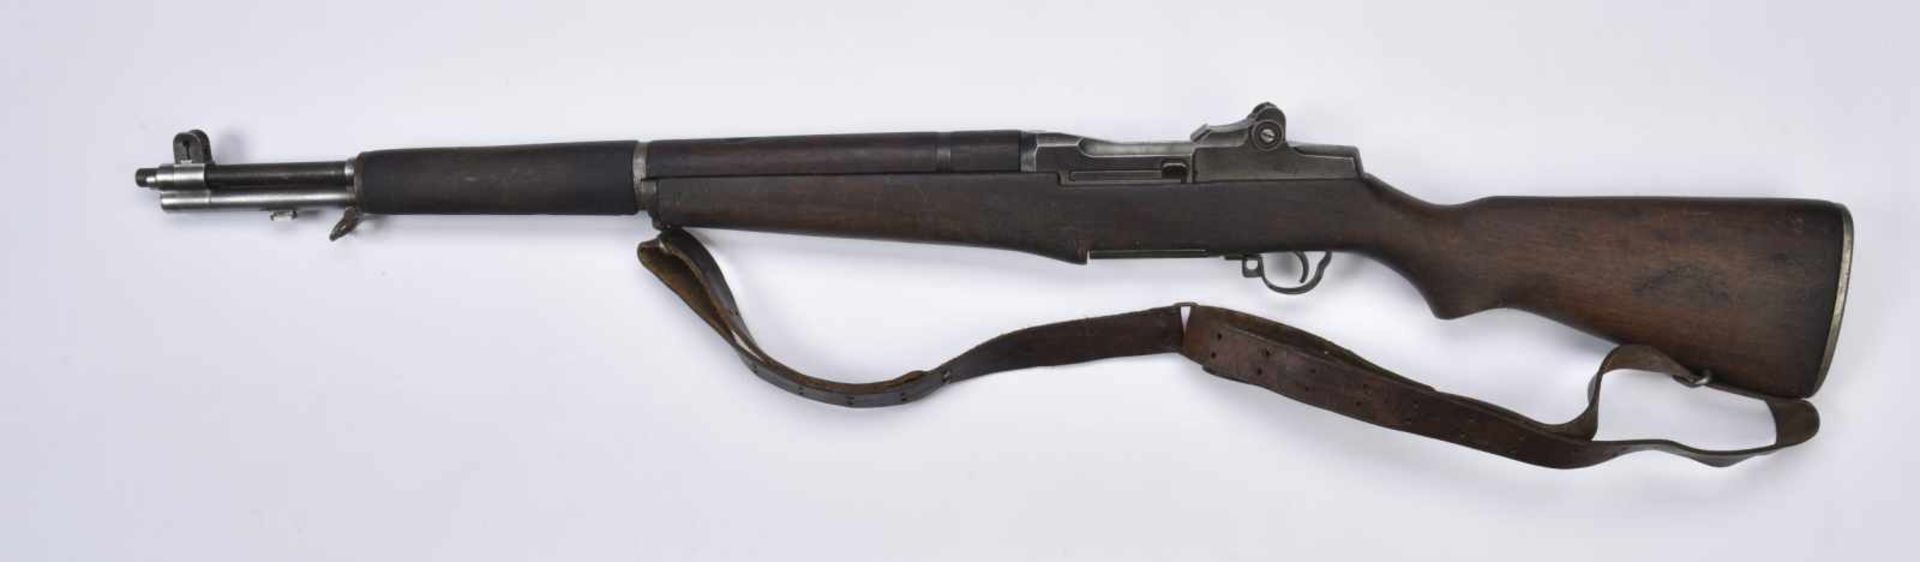 Fusil Garand calibre 30M1, fabrication « Springfield Armory », numéro « 2496224 ». Crosse en bois et - Bild 2 aus 4